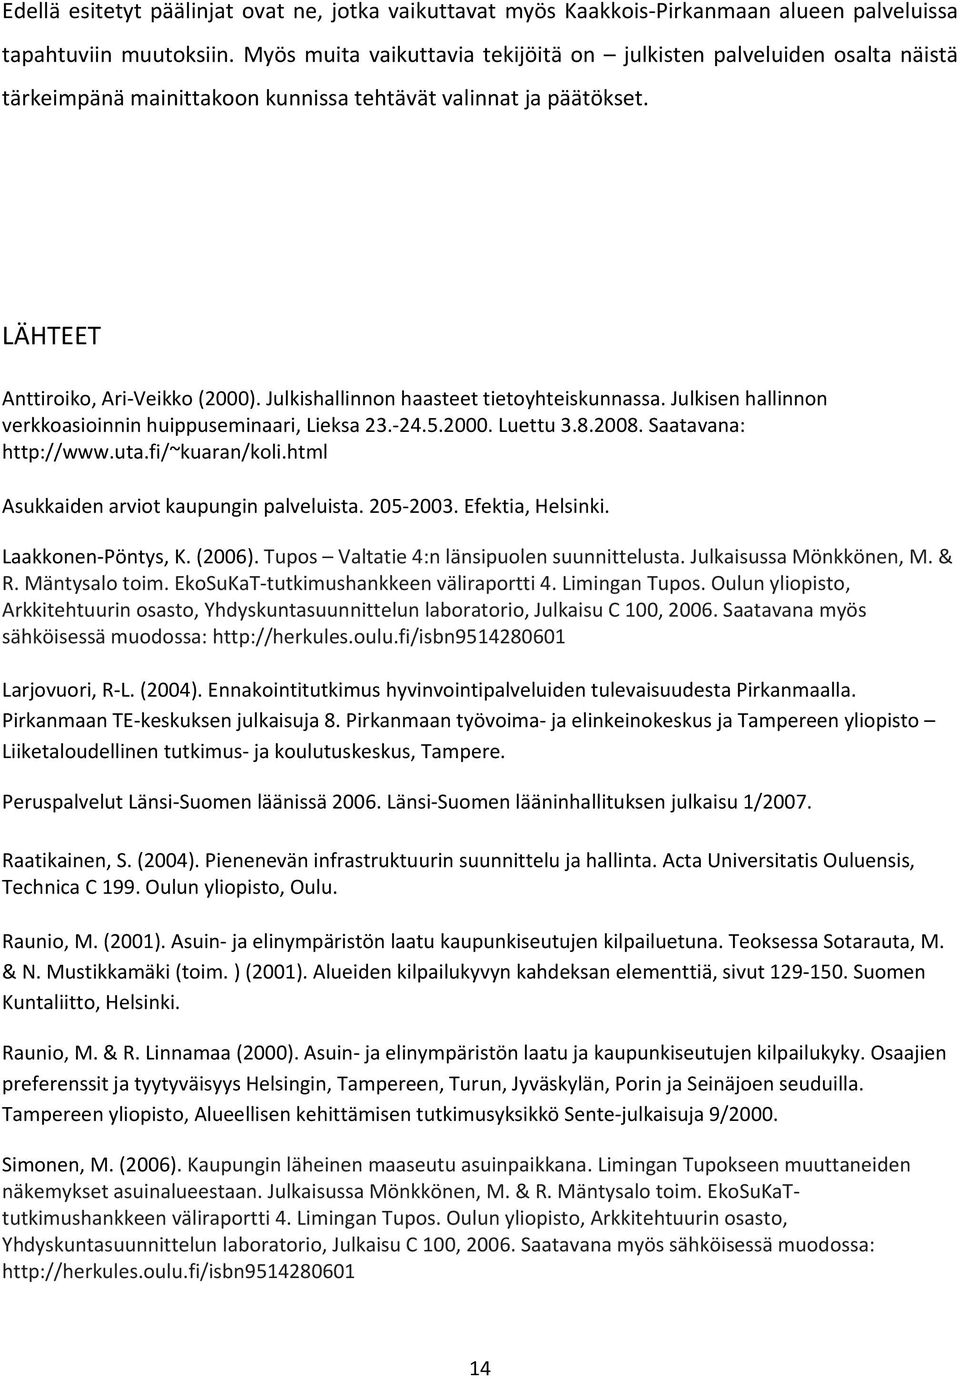 Julkishallinnon haasteet tietoyhteiskunnassa. Julkisen hallinnon verkkoasioinnin huippuseminaari, Lieksa 23. 24.5.2000. Luettu 3.8.2008. Saatavana: http://www.uta.fi/~kuaran/koli.